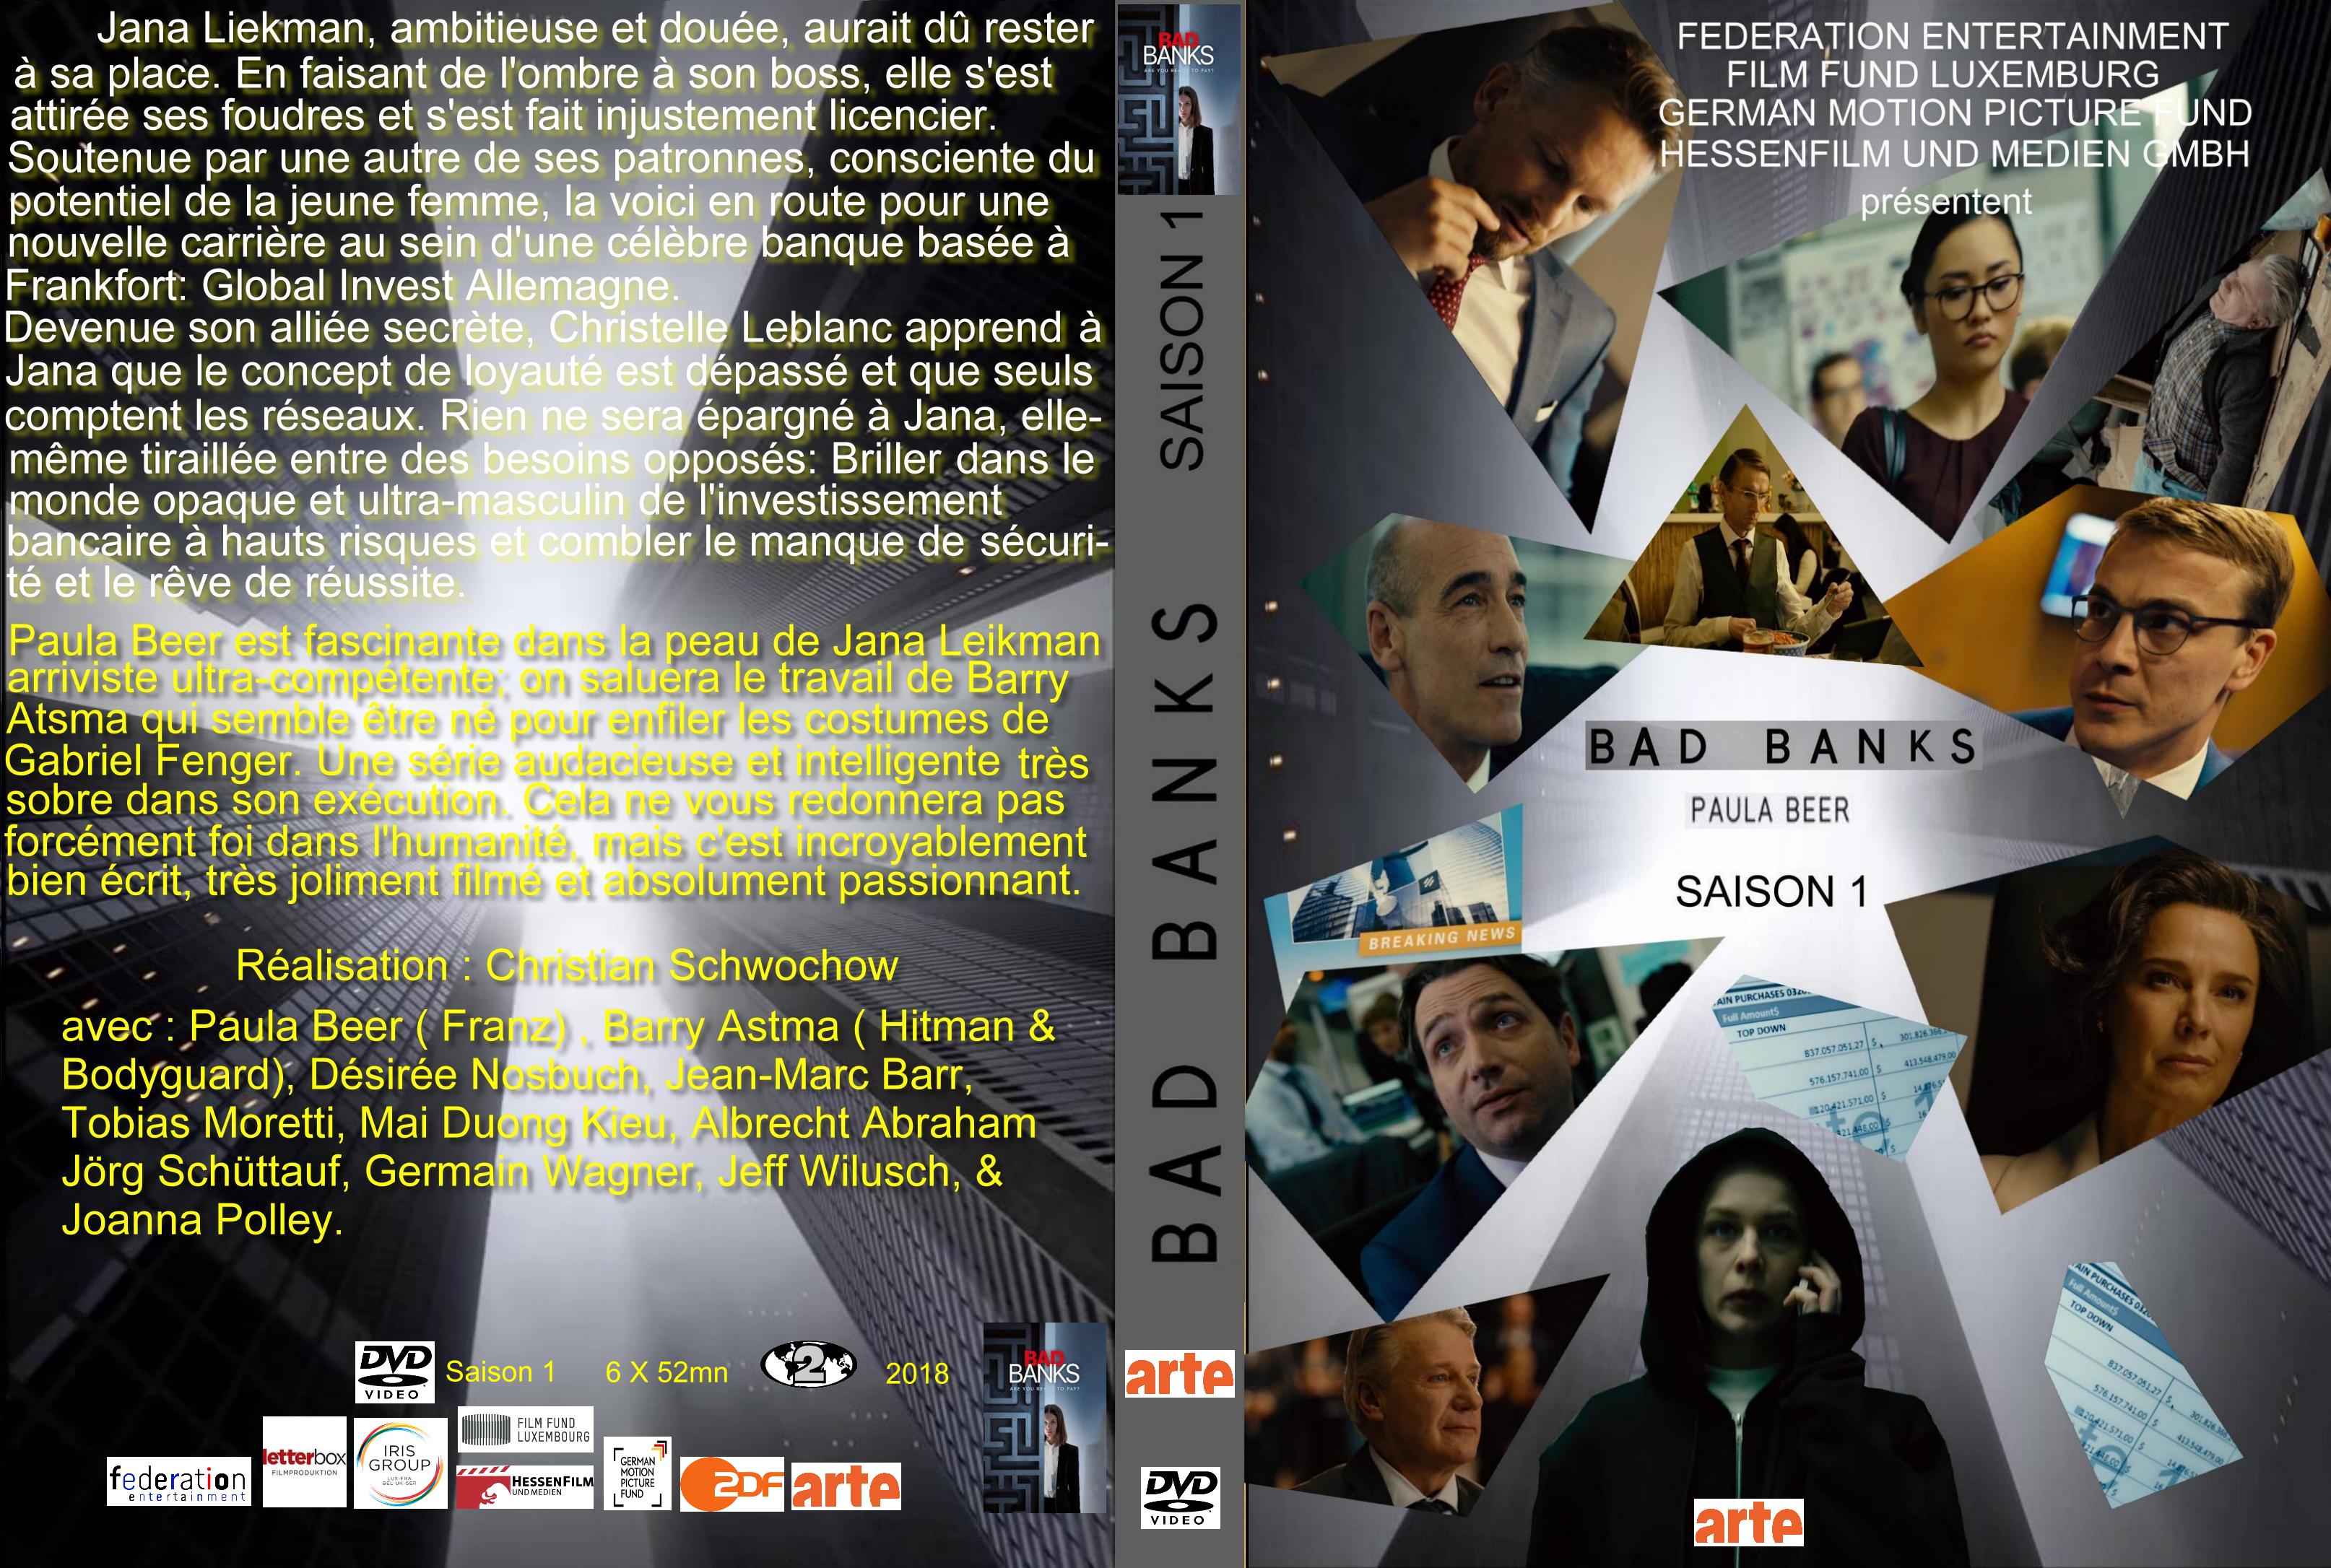 Jaquette DVD Bad banks Saison 1